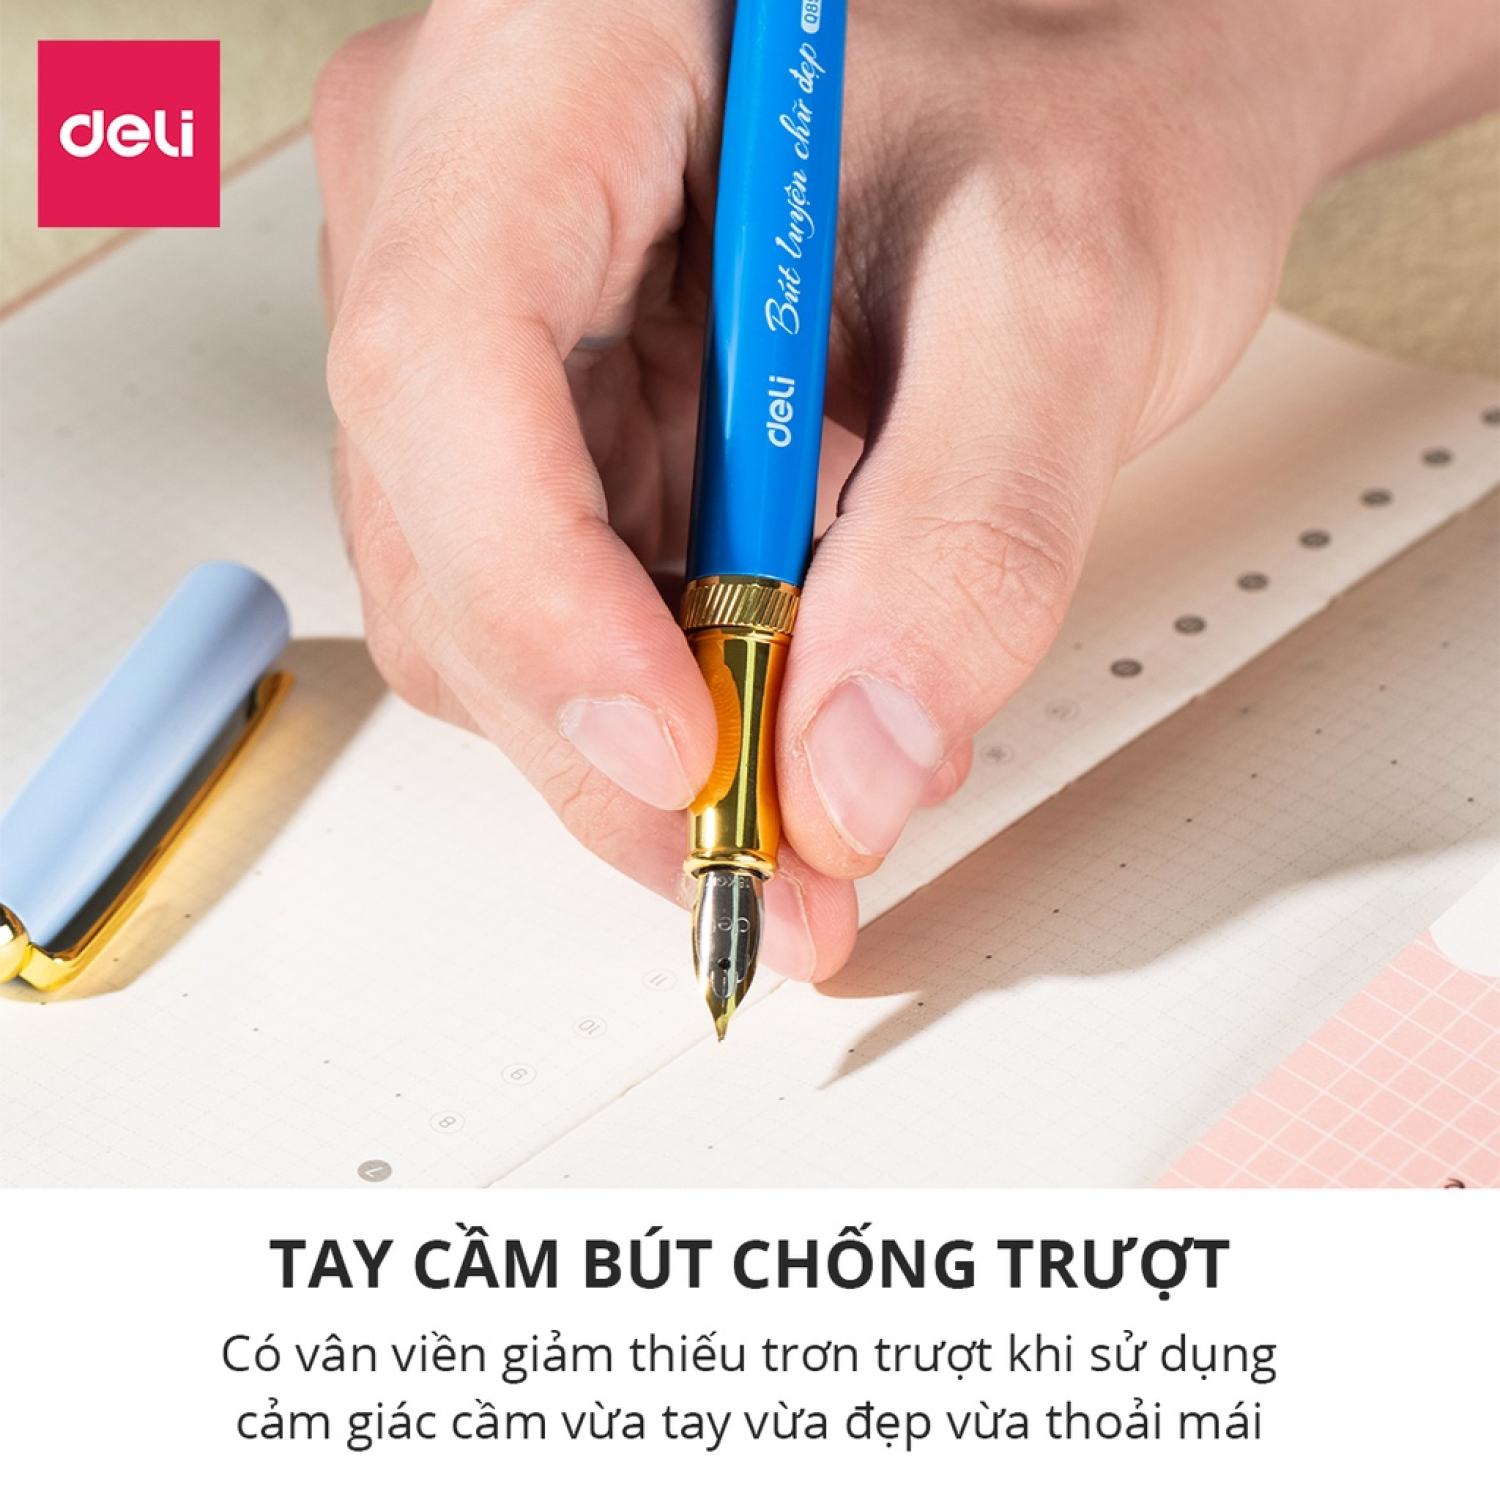 Bút máy kim loại Deli - Thiết kế trẻ trυng, ngòi bút chất lượng ...